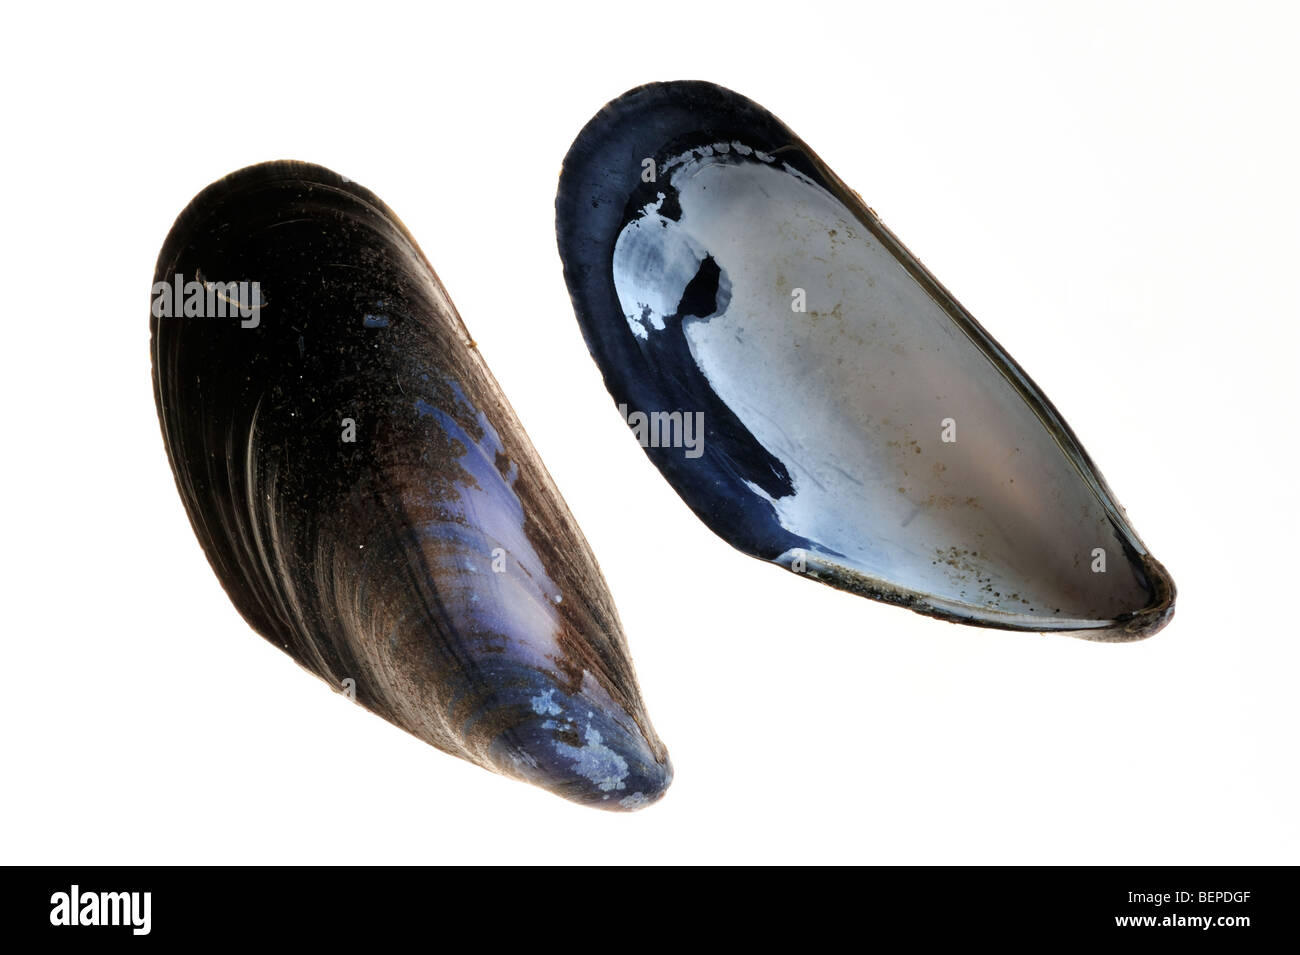 Conchas comunes de mejillón / mejillón azul (Mytilus edulis) sobre fondo blanco Foto de stock